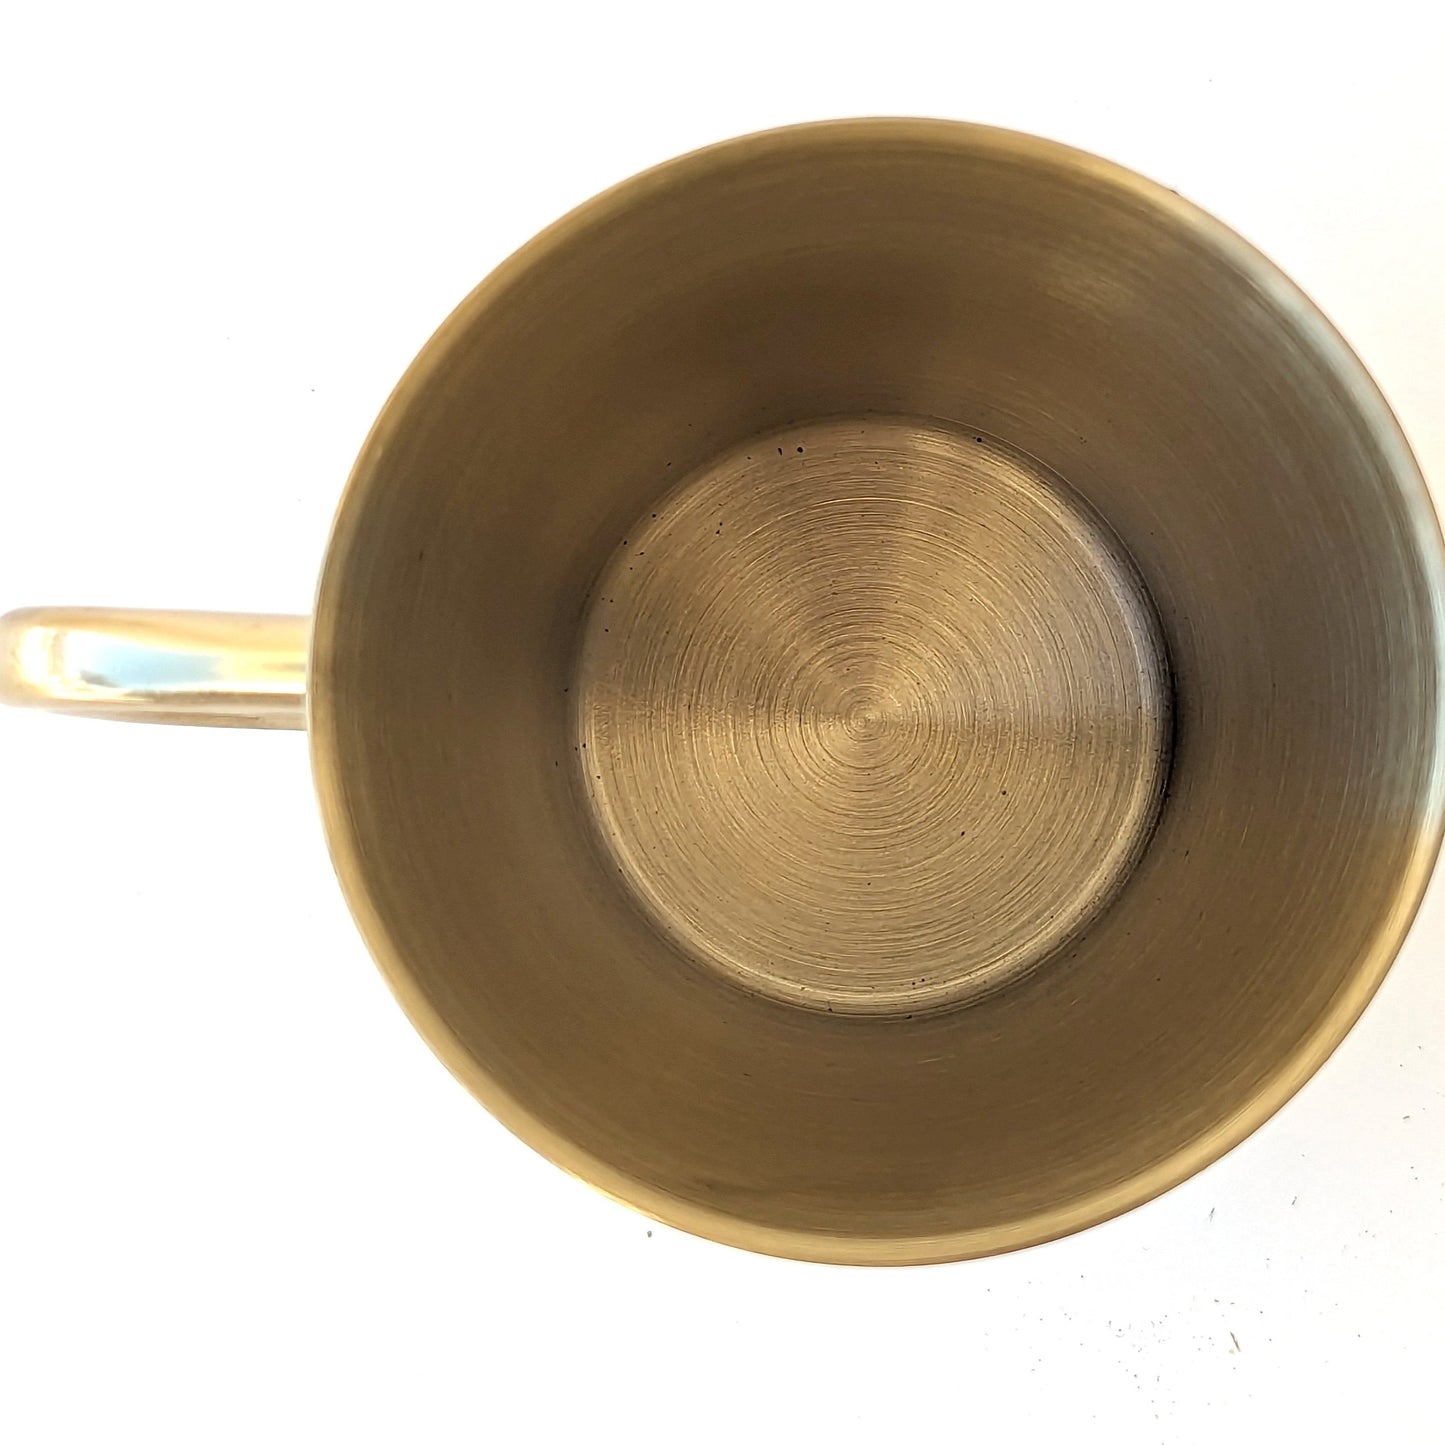 10oz Gold Stainless Steel Camping Mug